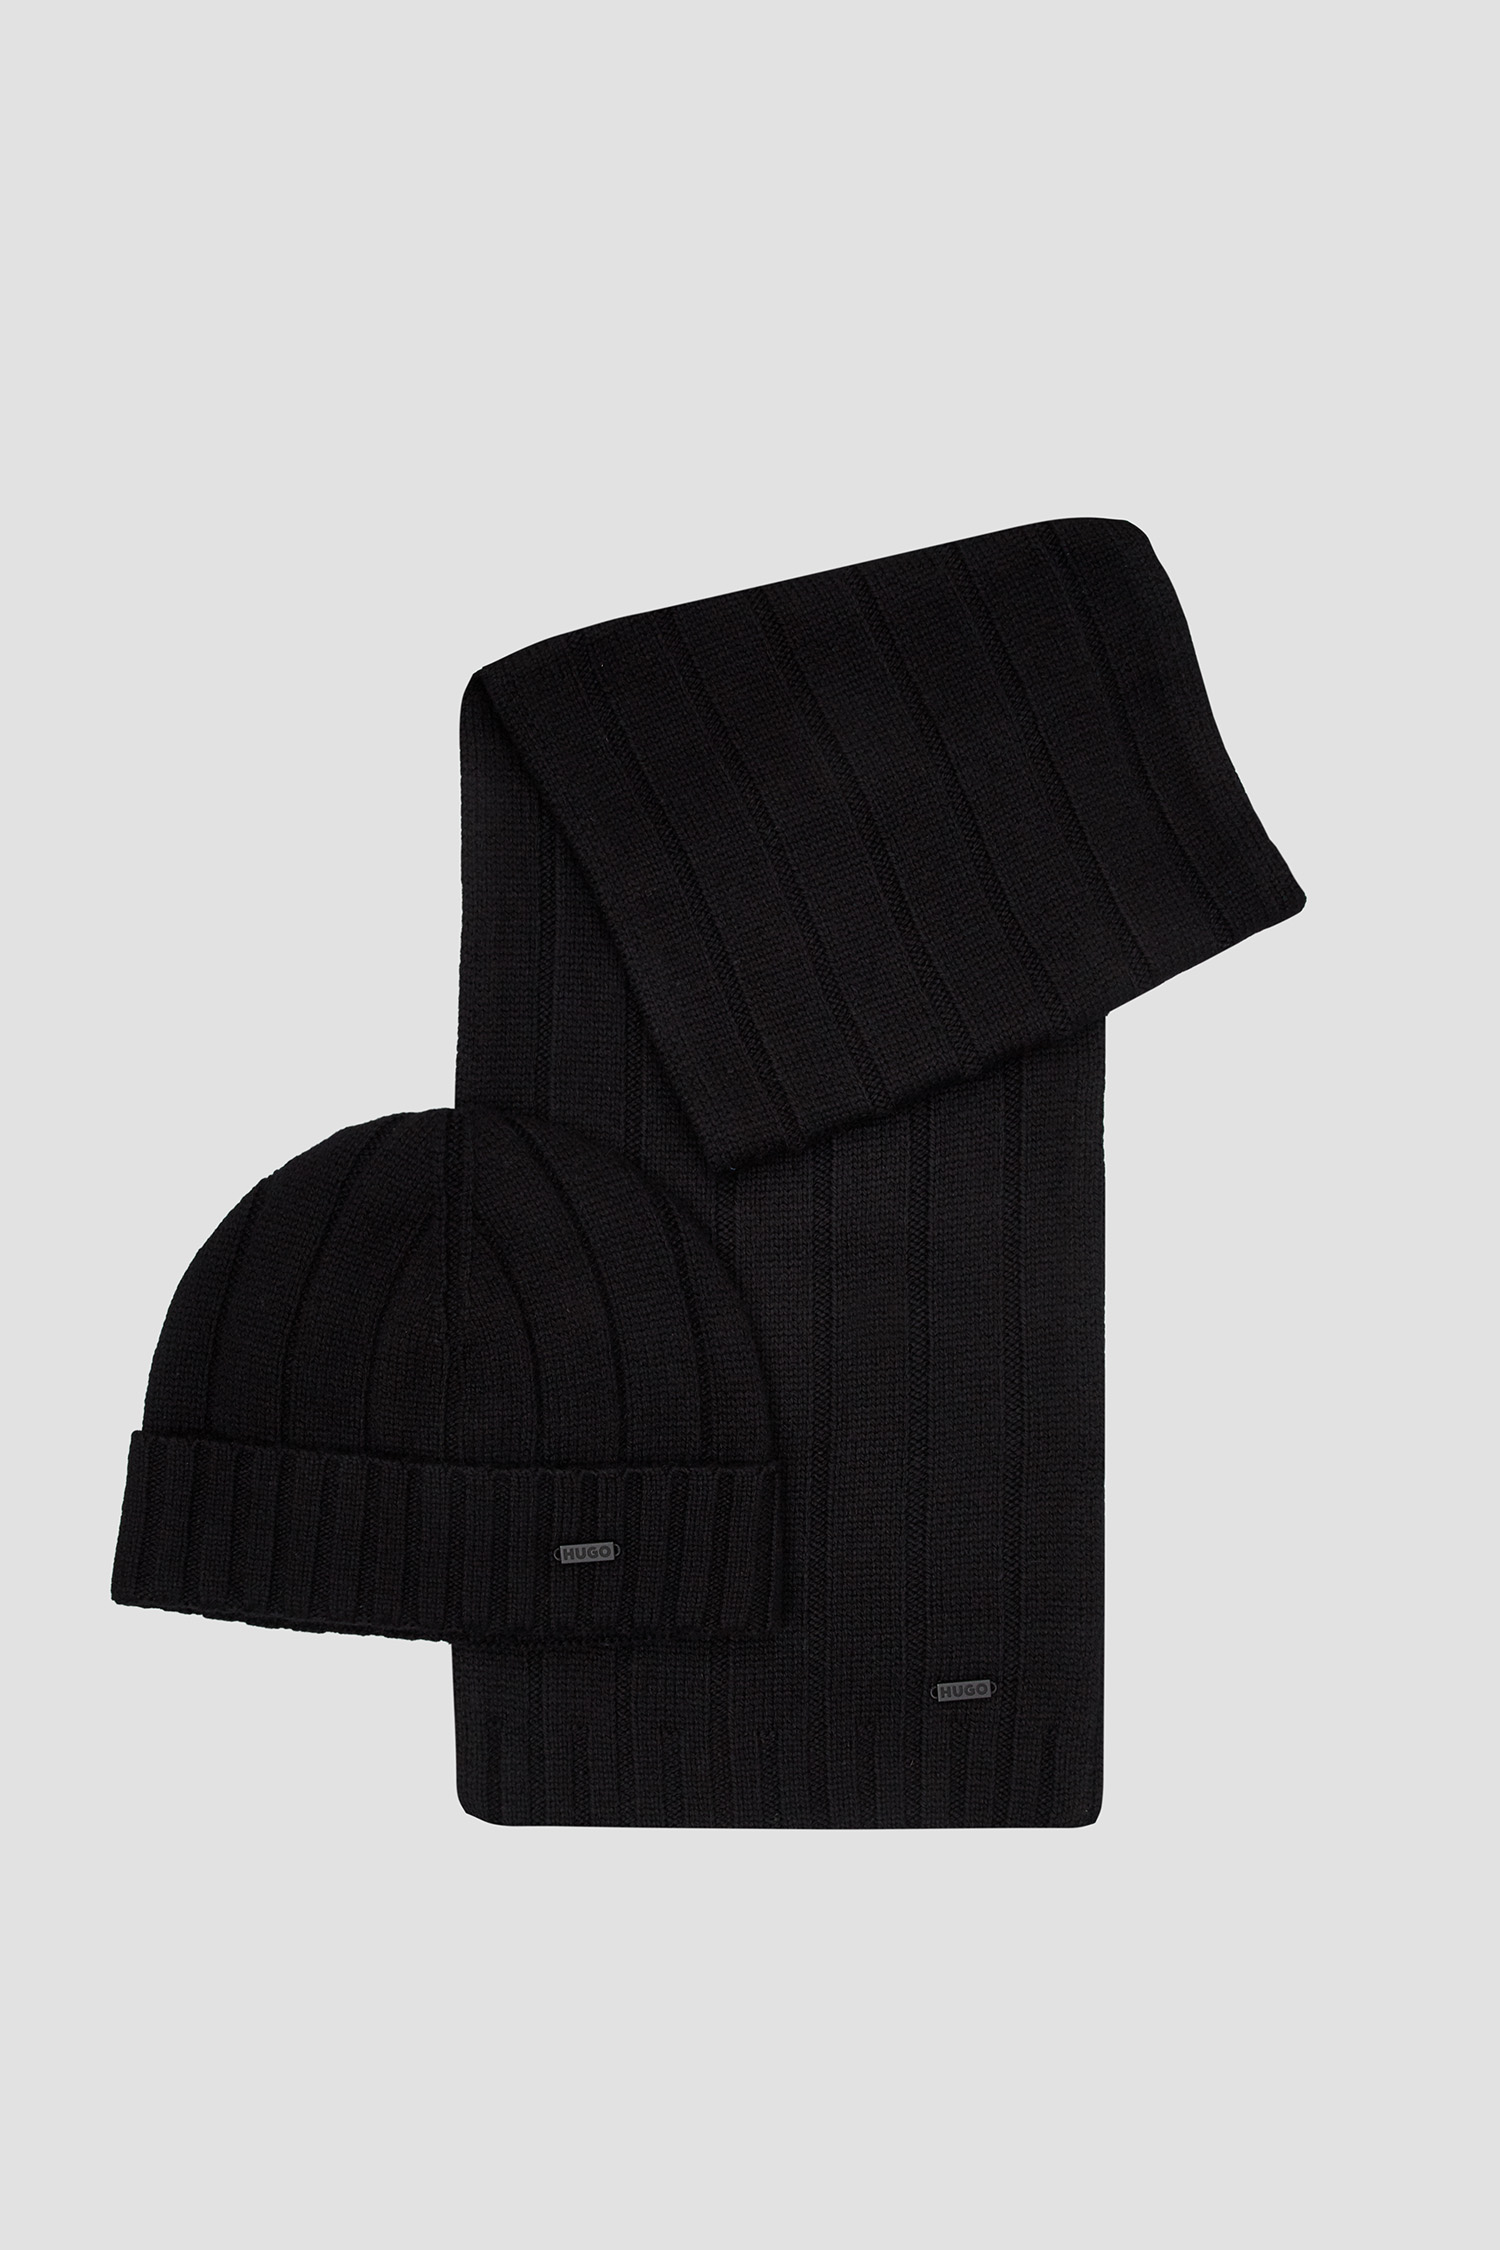 Мужской черный набор аксессуаров (шапка, шарф) HUGO 50495806;001